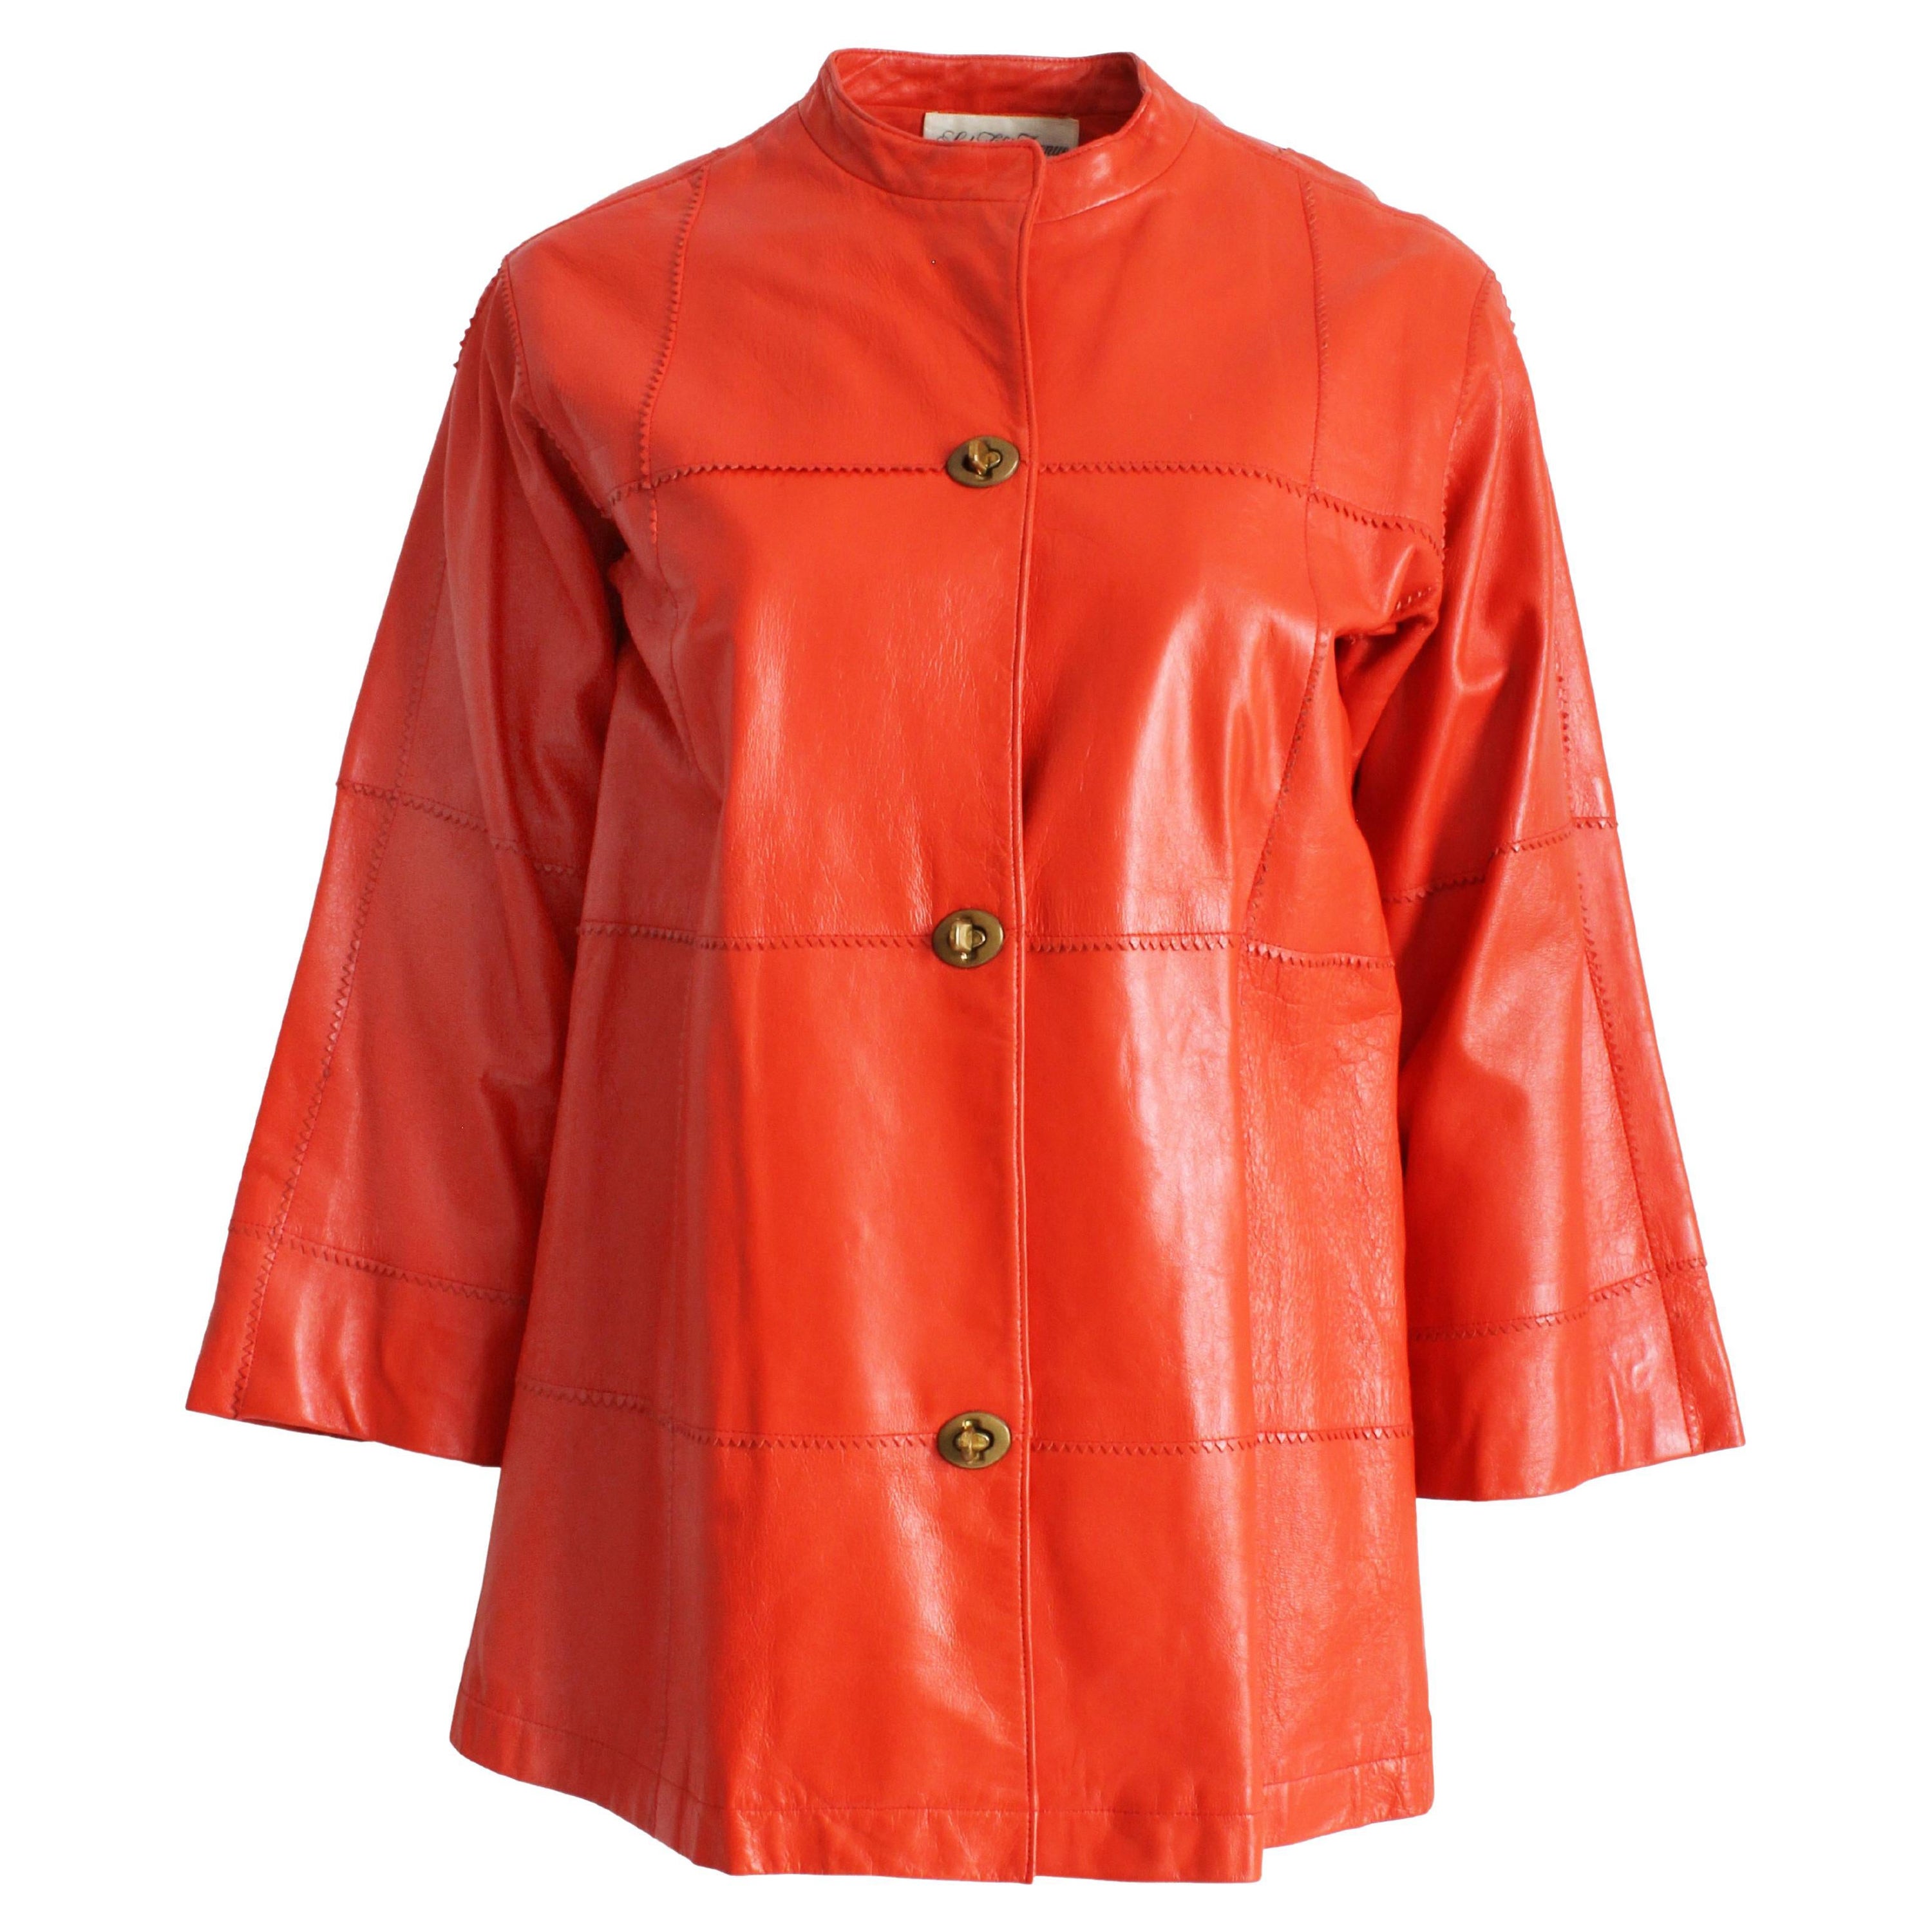 Bonnie Cashin for Sills - Veste en cuir avec manches kimono et bords en zigzag orange, rare  en vente